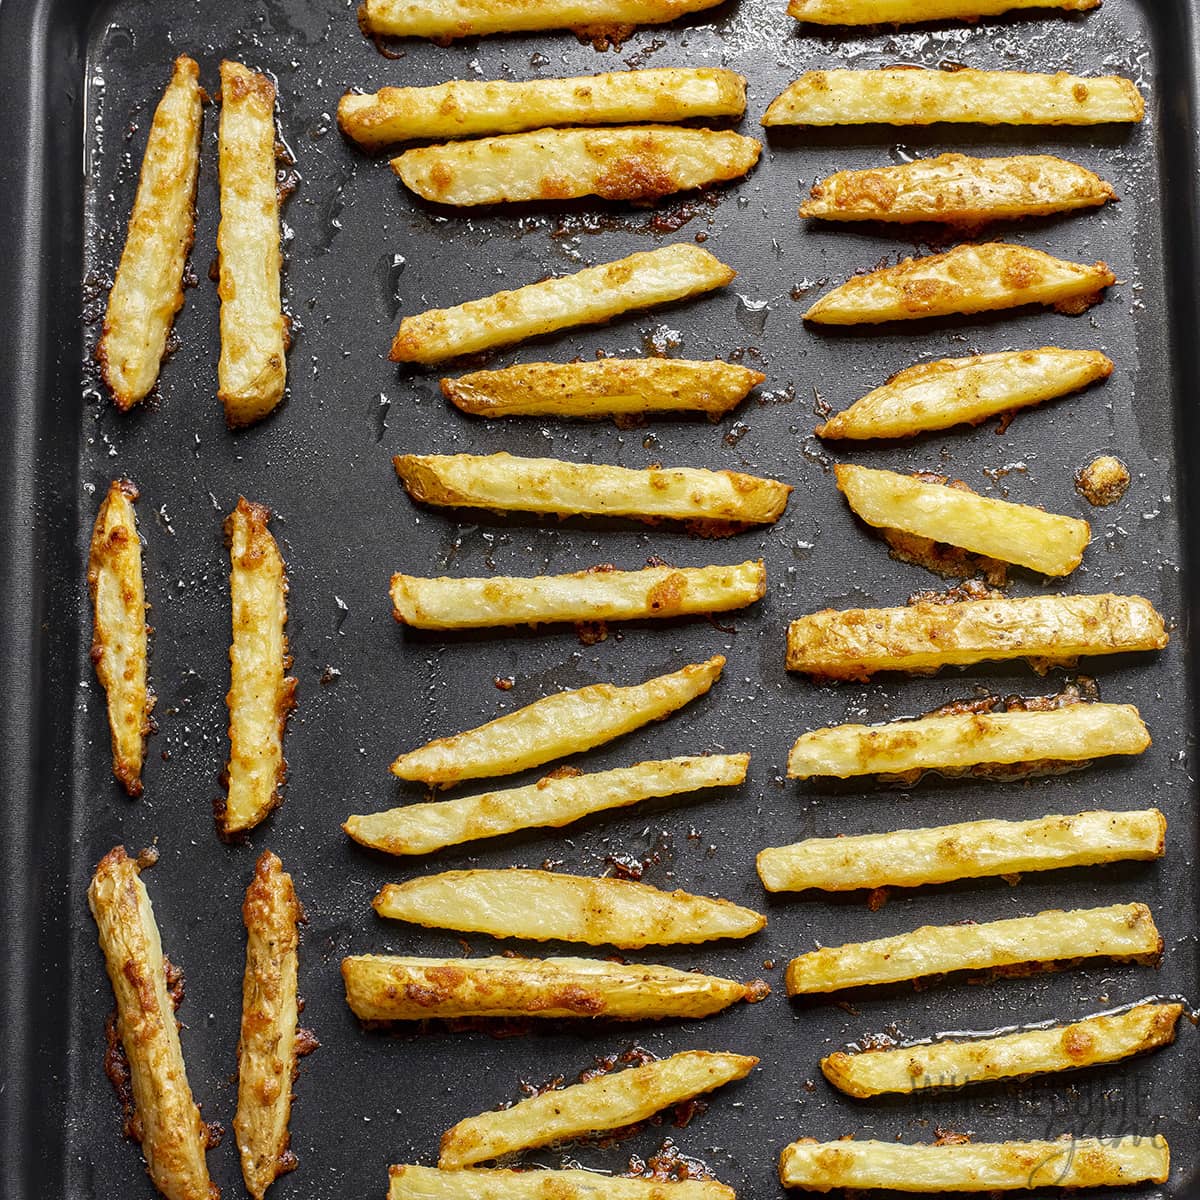 Baked garlic parmesan fries on baking sheet.